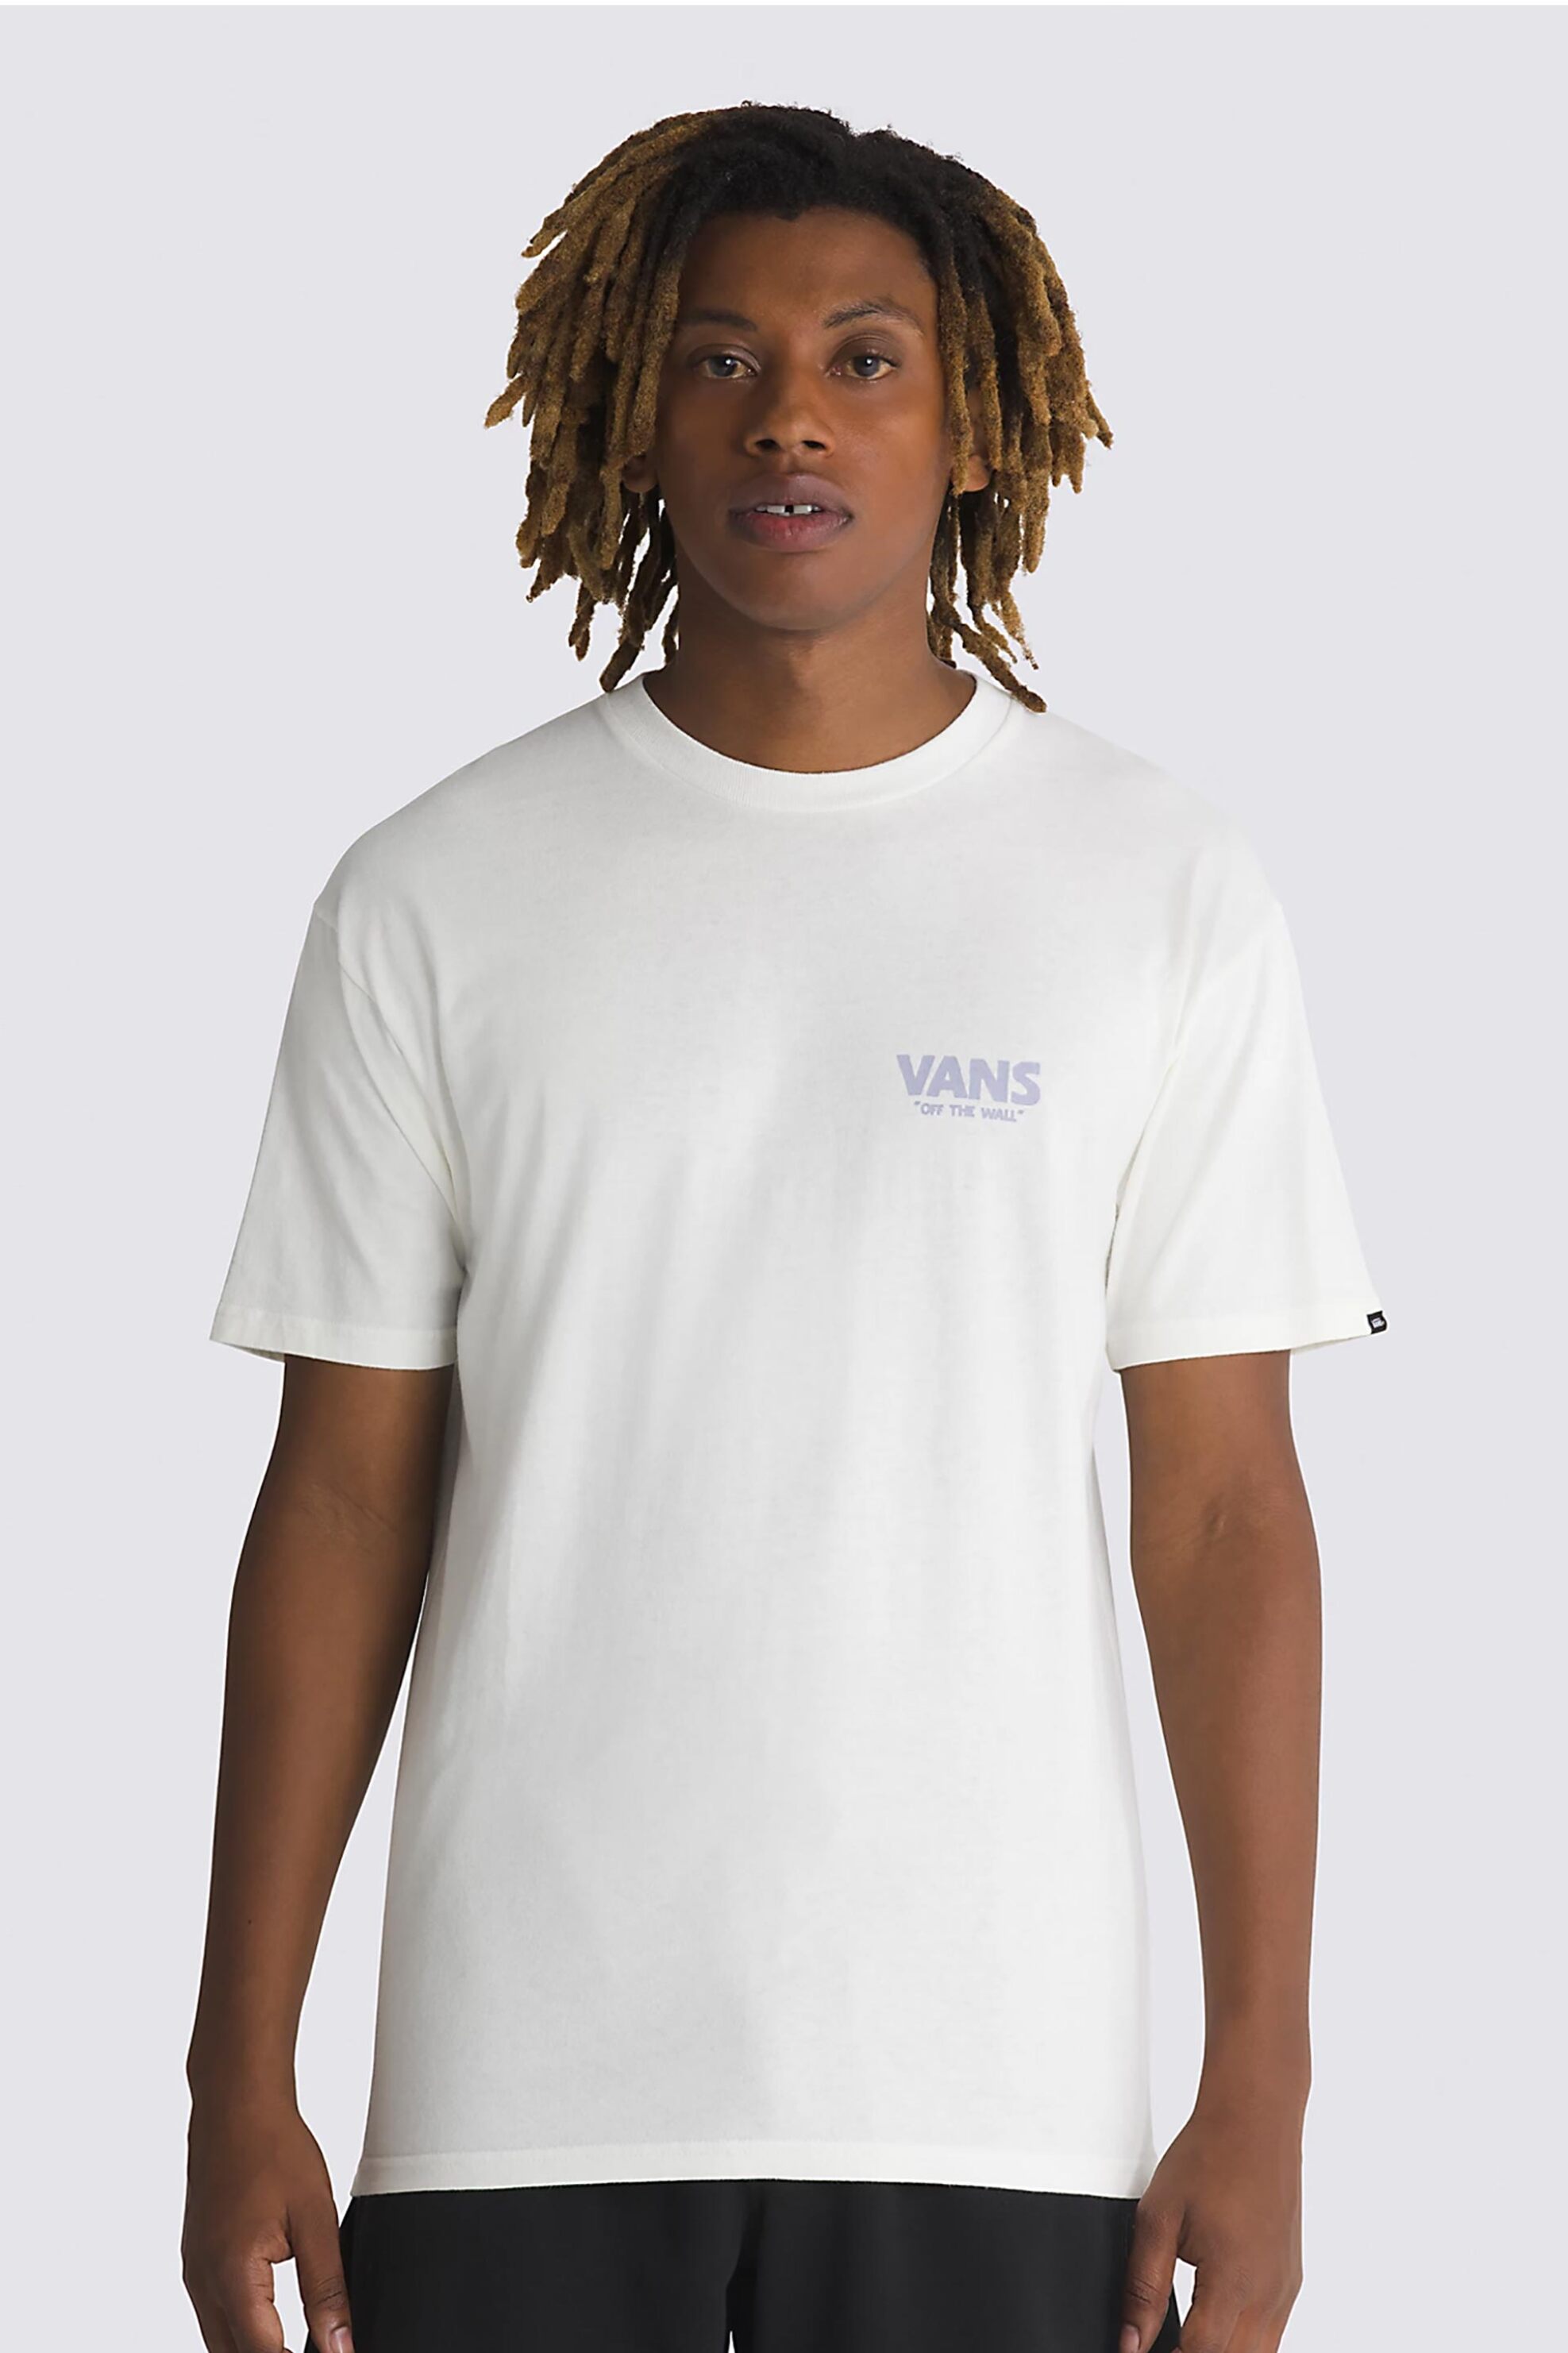 Ανδρική Μόδα > Ανδρικά Ρούχα > Ανδρικές Μπλούζες > Ανδρικά T-Shirts Vans ανδρικό T-shirt βαμβακερό μονόχρωμο με contrast logo και graphic print "Stay Cool" - VN000G56FS81 Λευκό